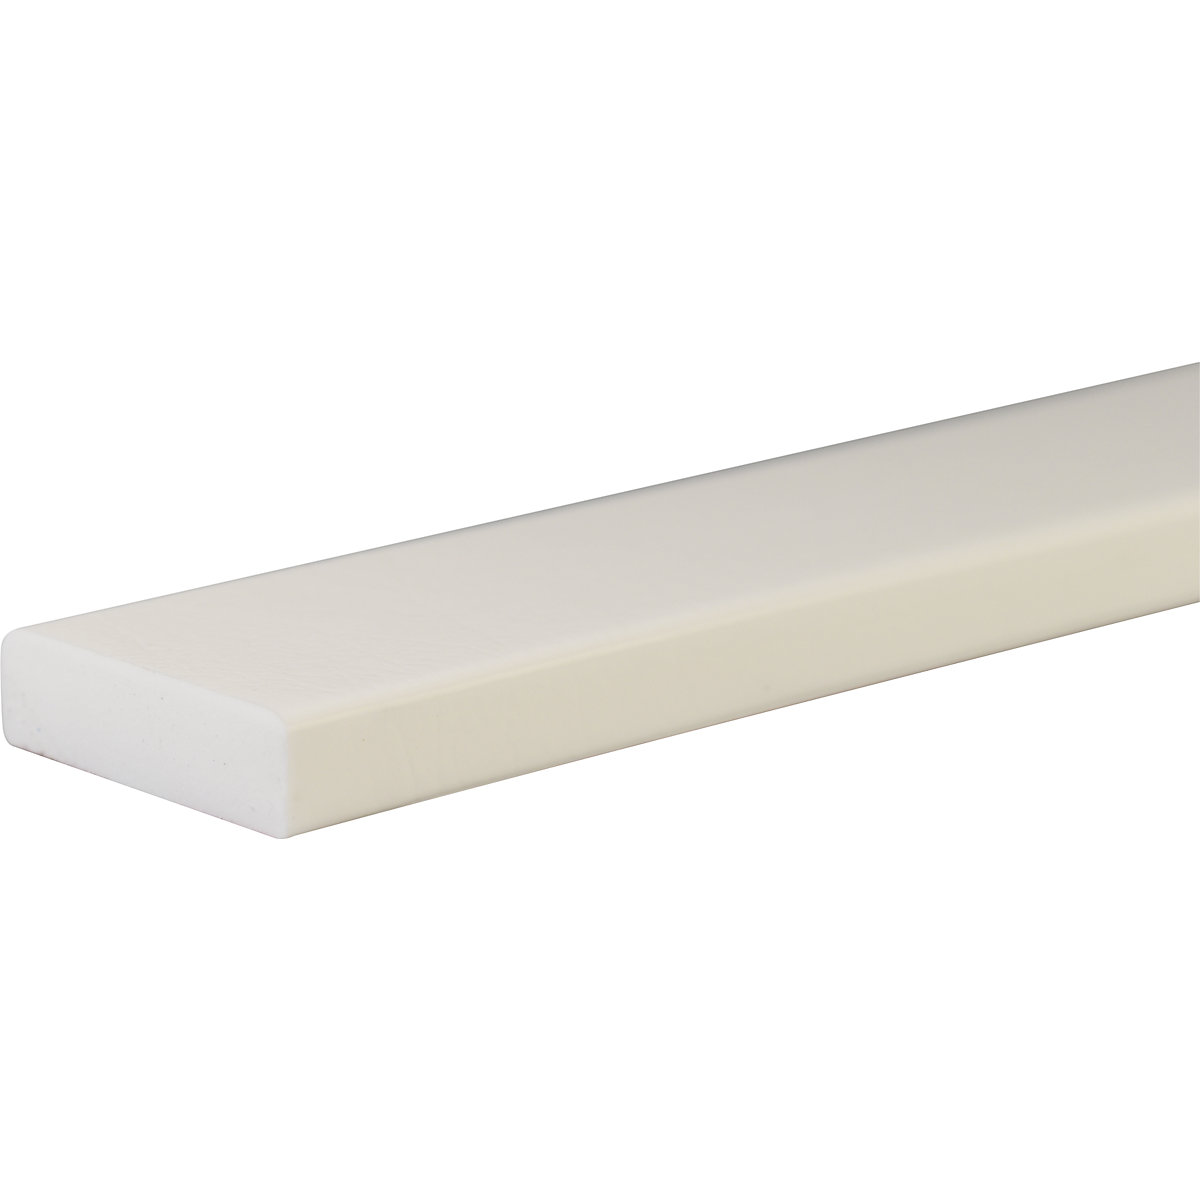 Protection des surfaces Knuffi® – SHG, type S, pièce de 1 mètre, blanc-32